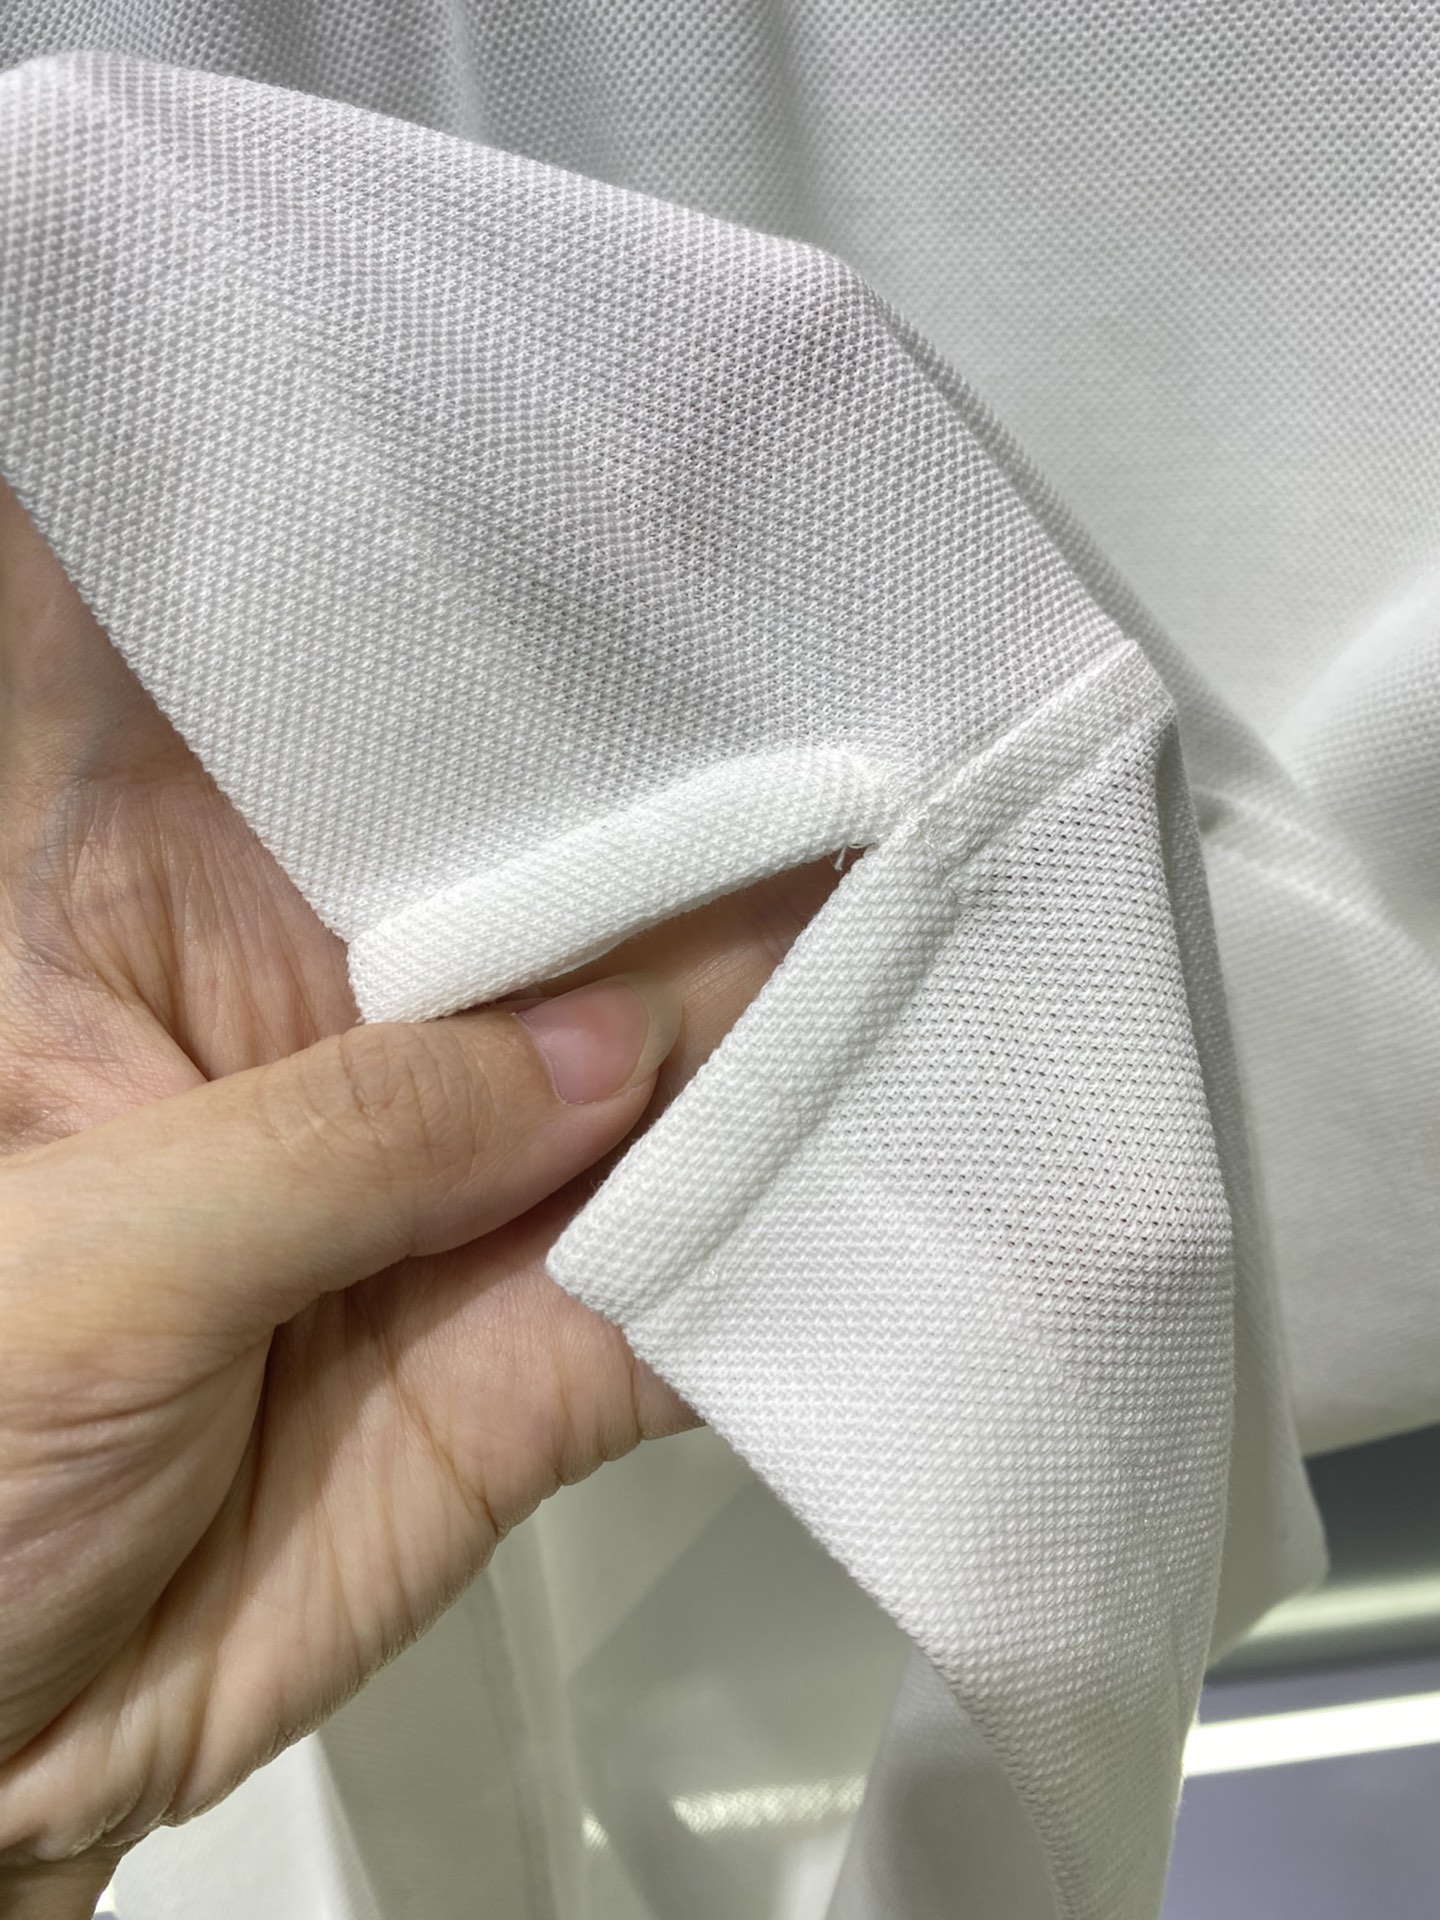 #1v夏季新款短袖T恤Polo客供定制珠地面料简单时尚款超级好看！简单大方的款式！满满的高级感四季可穿颜